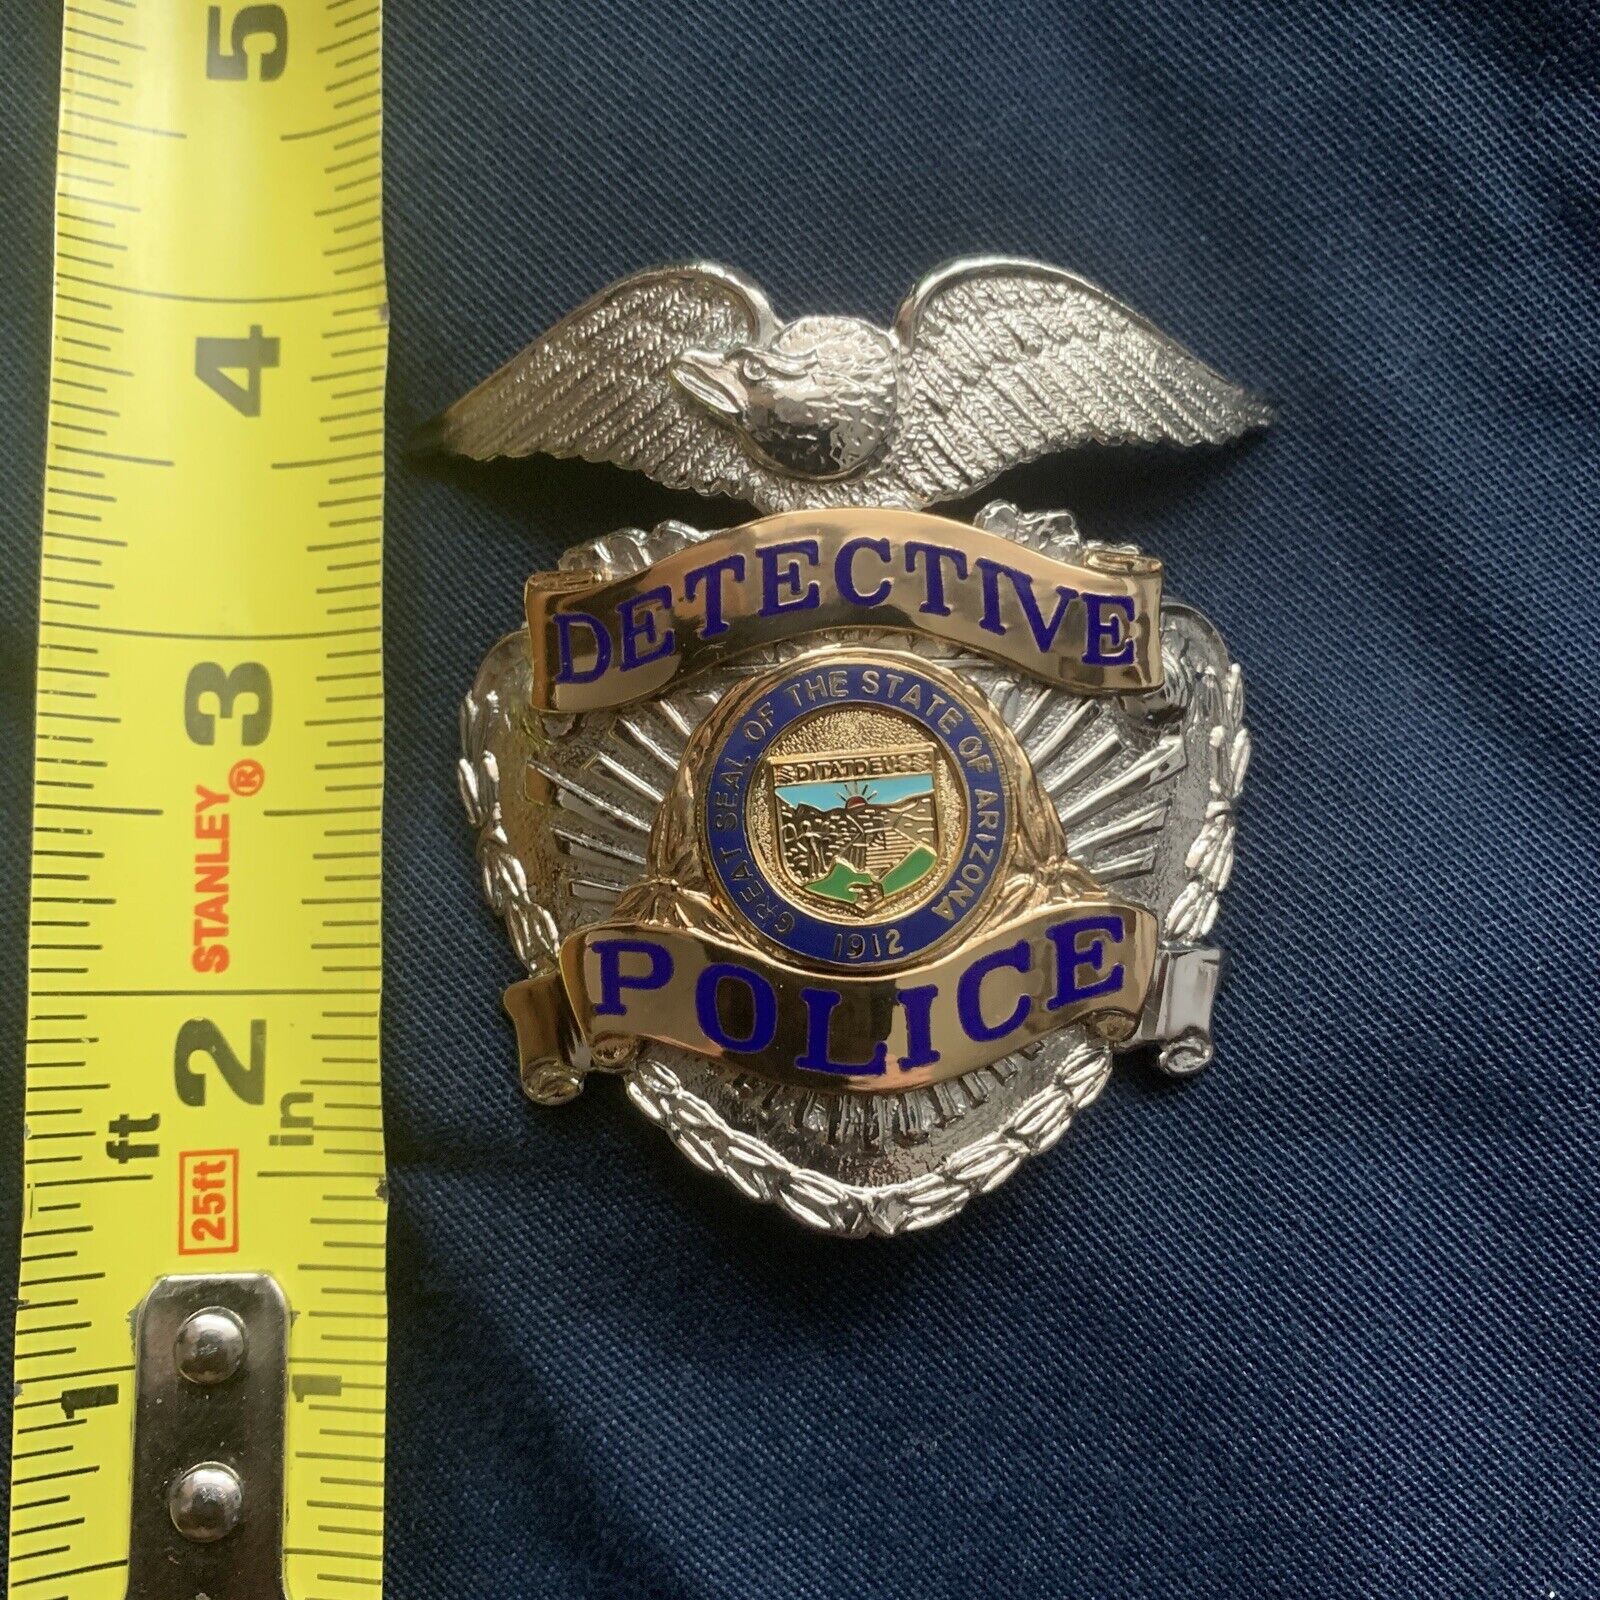 Arizona police Detective hat badge Obsolete